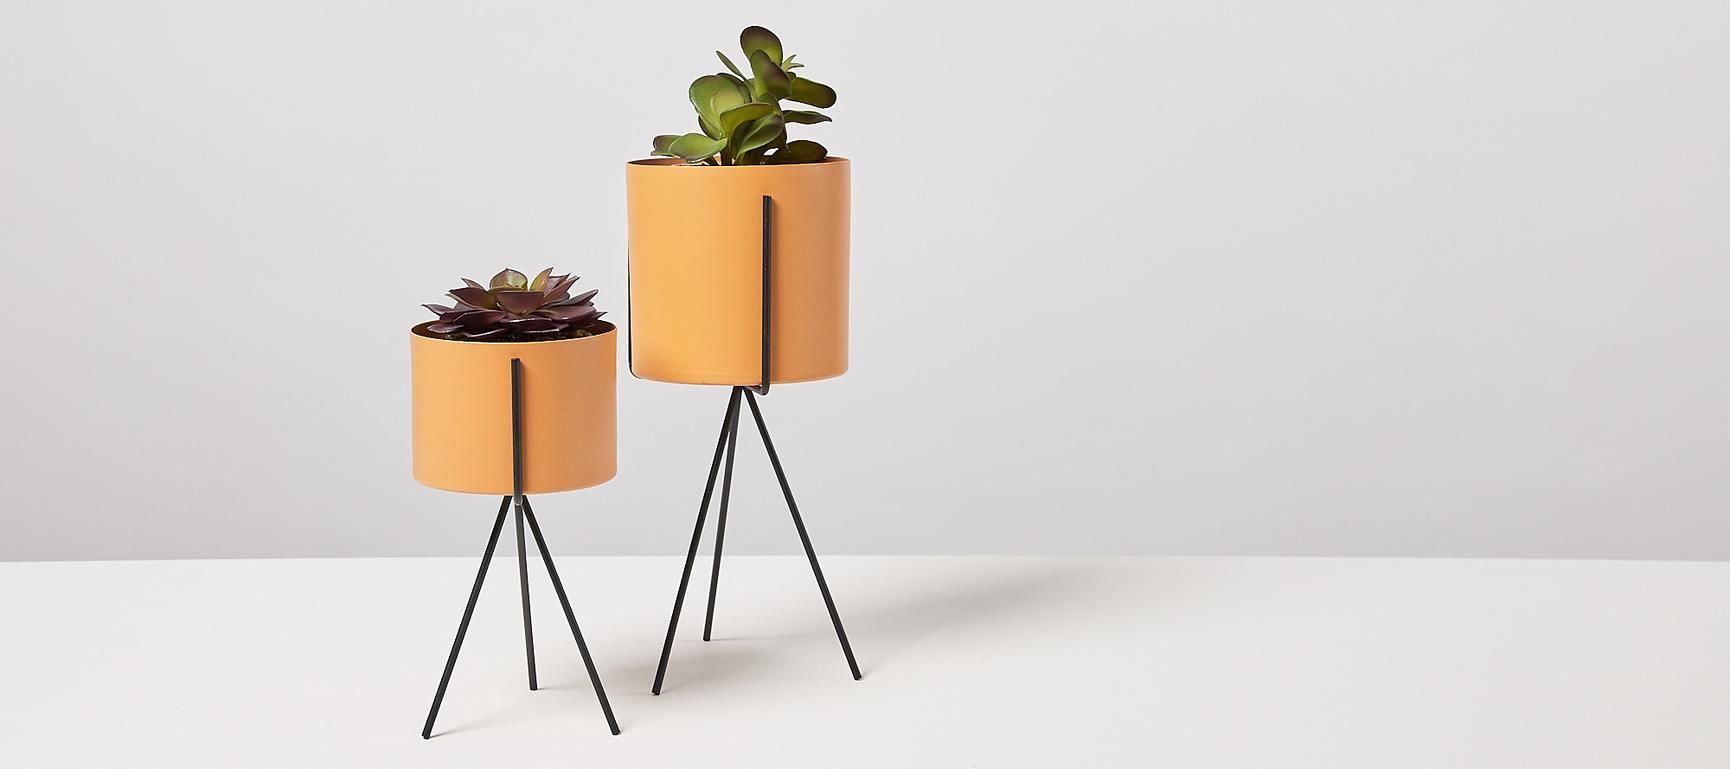 Pedestal Plant Pots | Oliver Bonas IE